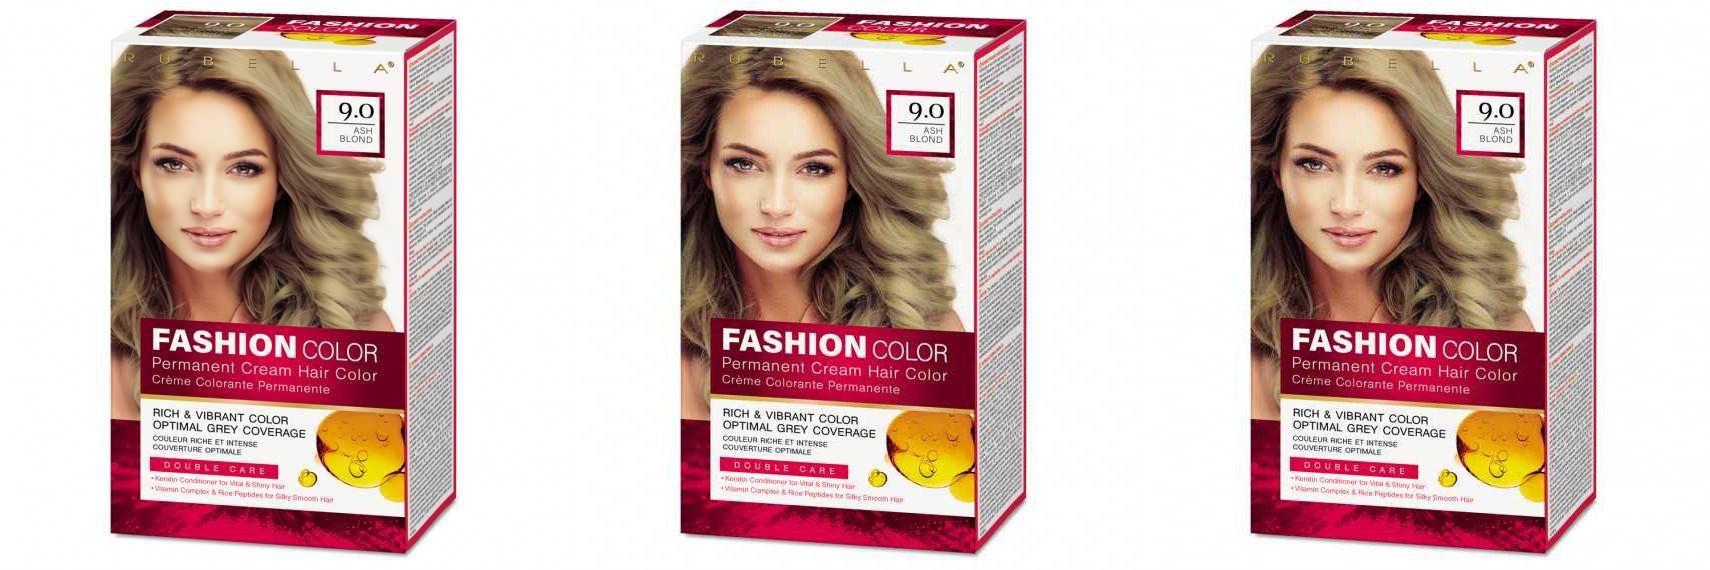 Краска для волос Rubella, Ash Blond, Тон 7.53 Пепельно-русый, 50 мл, 3 шт стойкая крем краска для волос rubella fashion color 3 0 темный шоколад 50 мл 3 шт